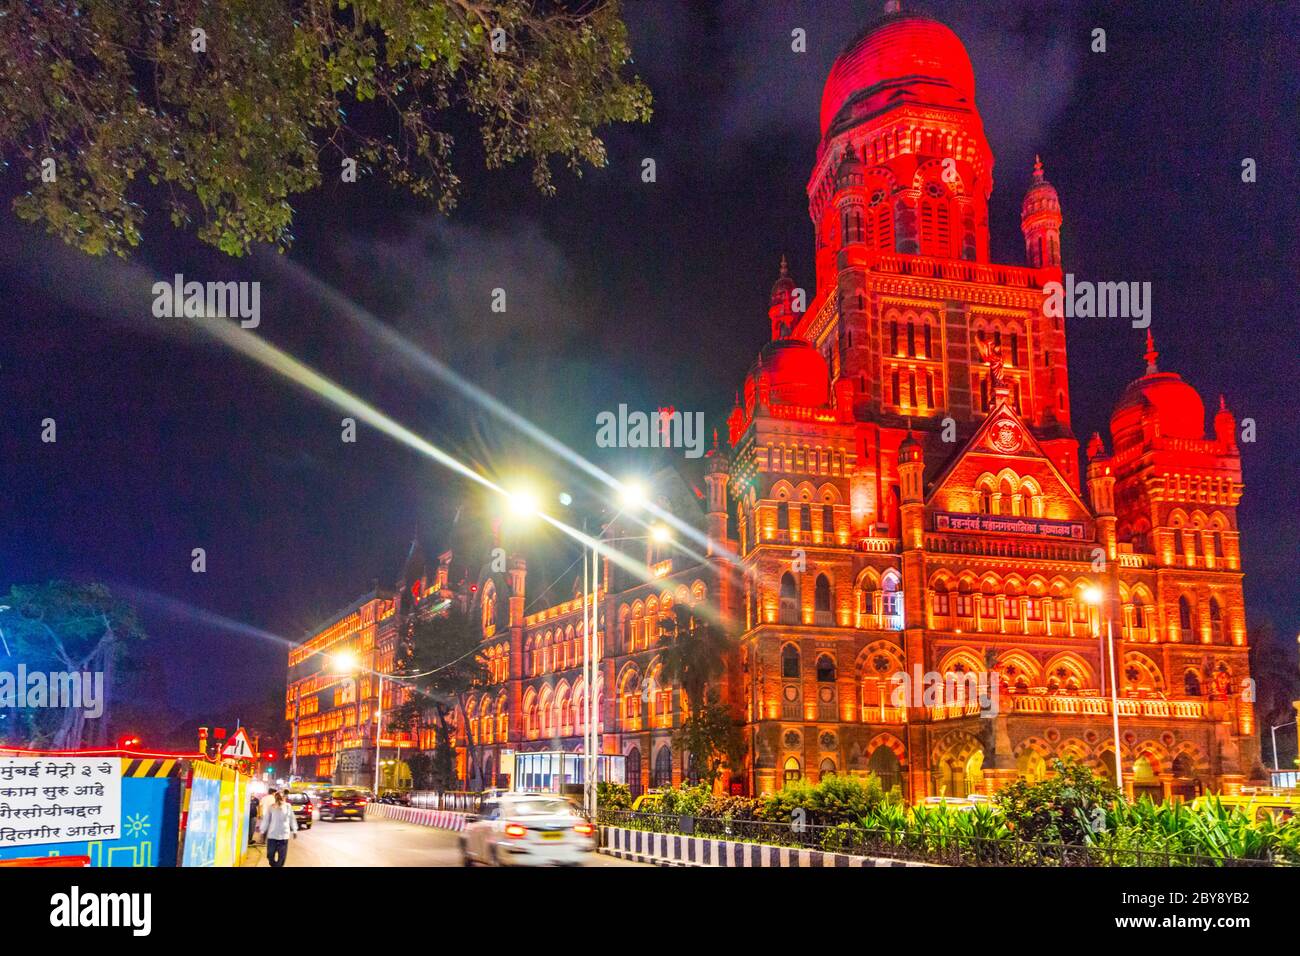 Chhatrapati Shivaji Maharaj Terminus, anciennement connu sous le nom de Victoria Terminus, est une gare ferroviaire historique et un site classé au patrimoine mondial de l'UNESCO à Mumbai. Banque D'Images